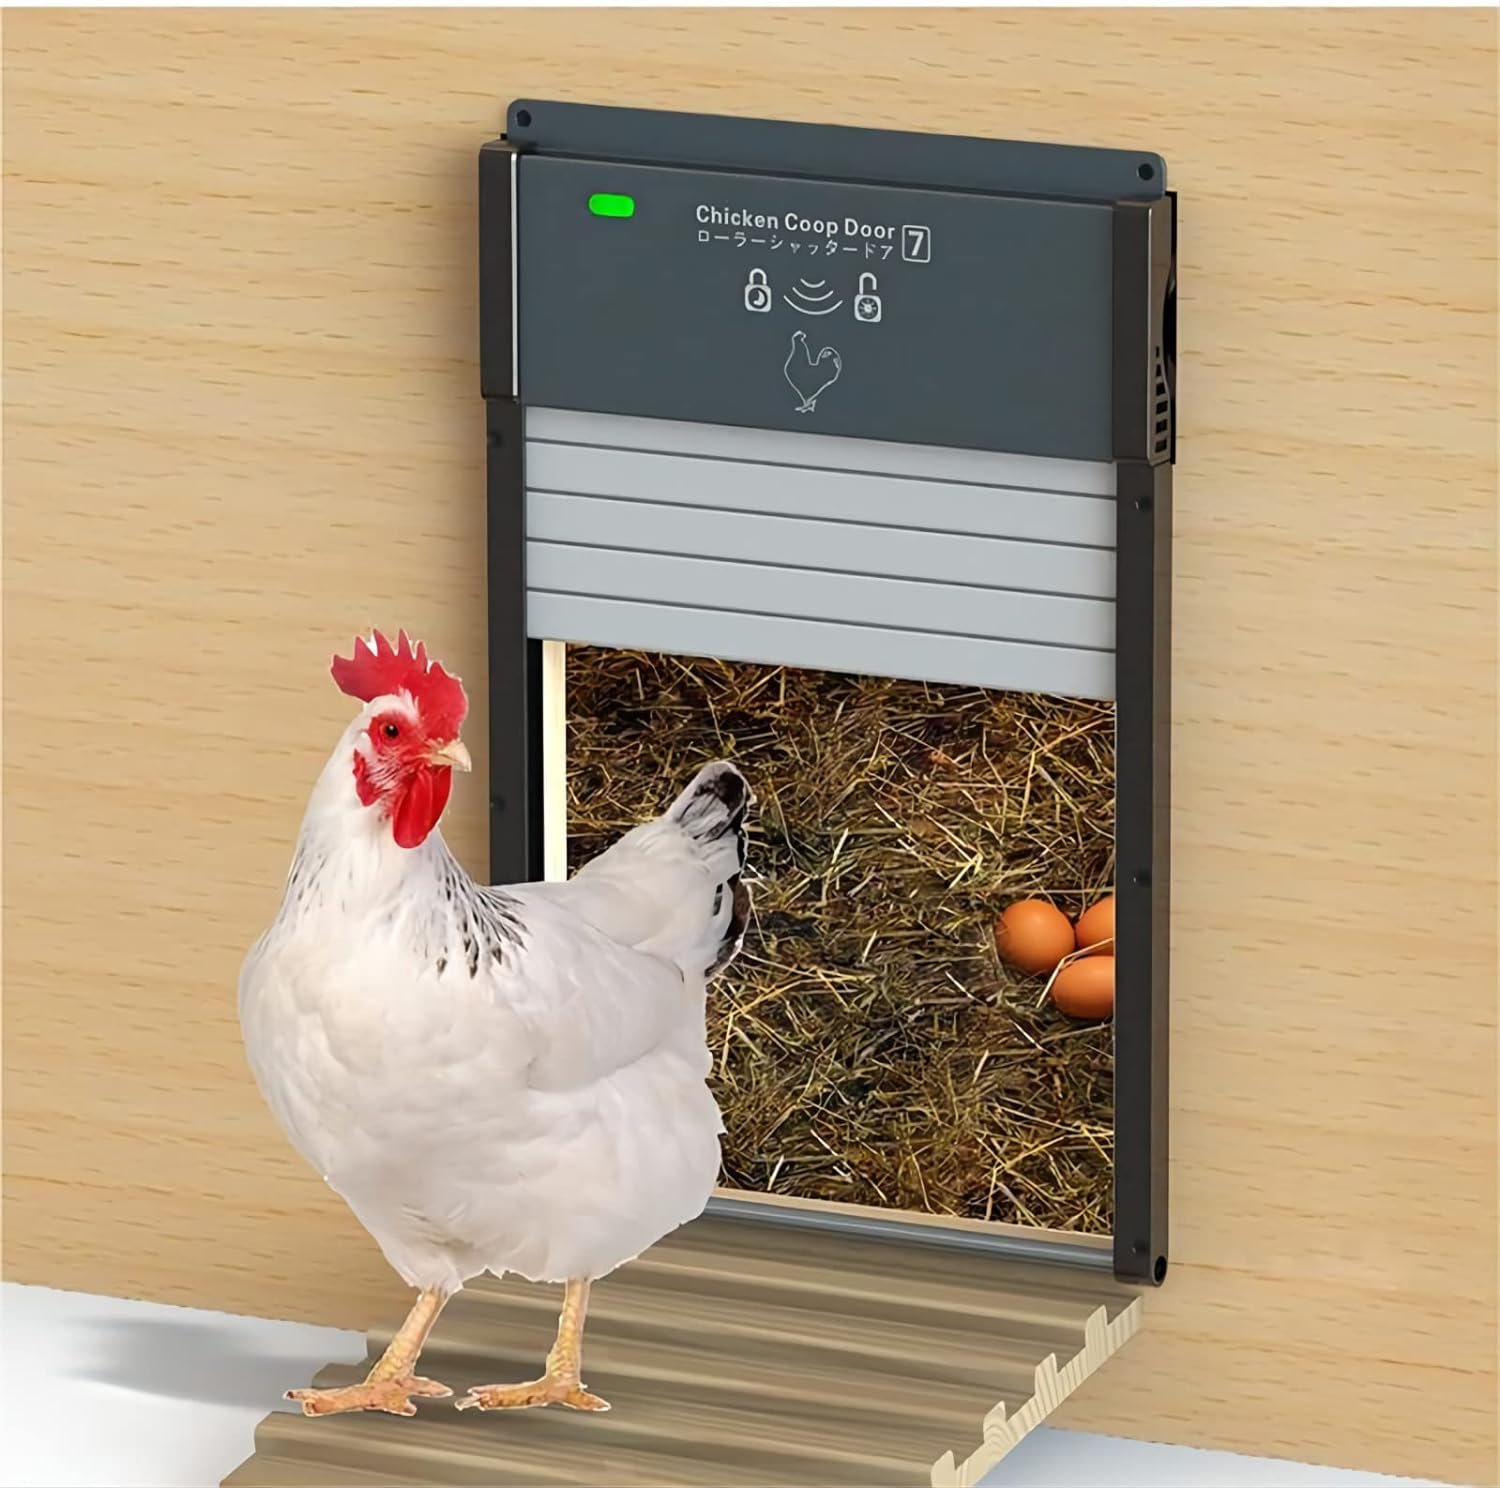 Automatic Chicken Coop Door with Timer, Light Sensor, Solar Powered Coop Door Opener, Full Aluminum Solar Chicken Coops Automatic Door Closer Roller Shutter Predator Resistant Auto